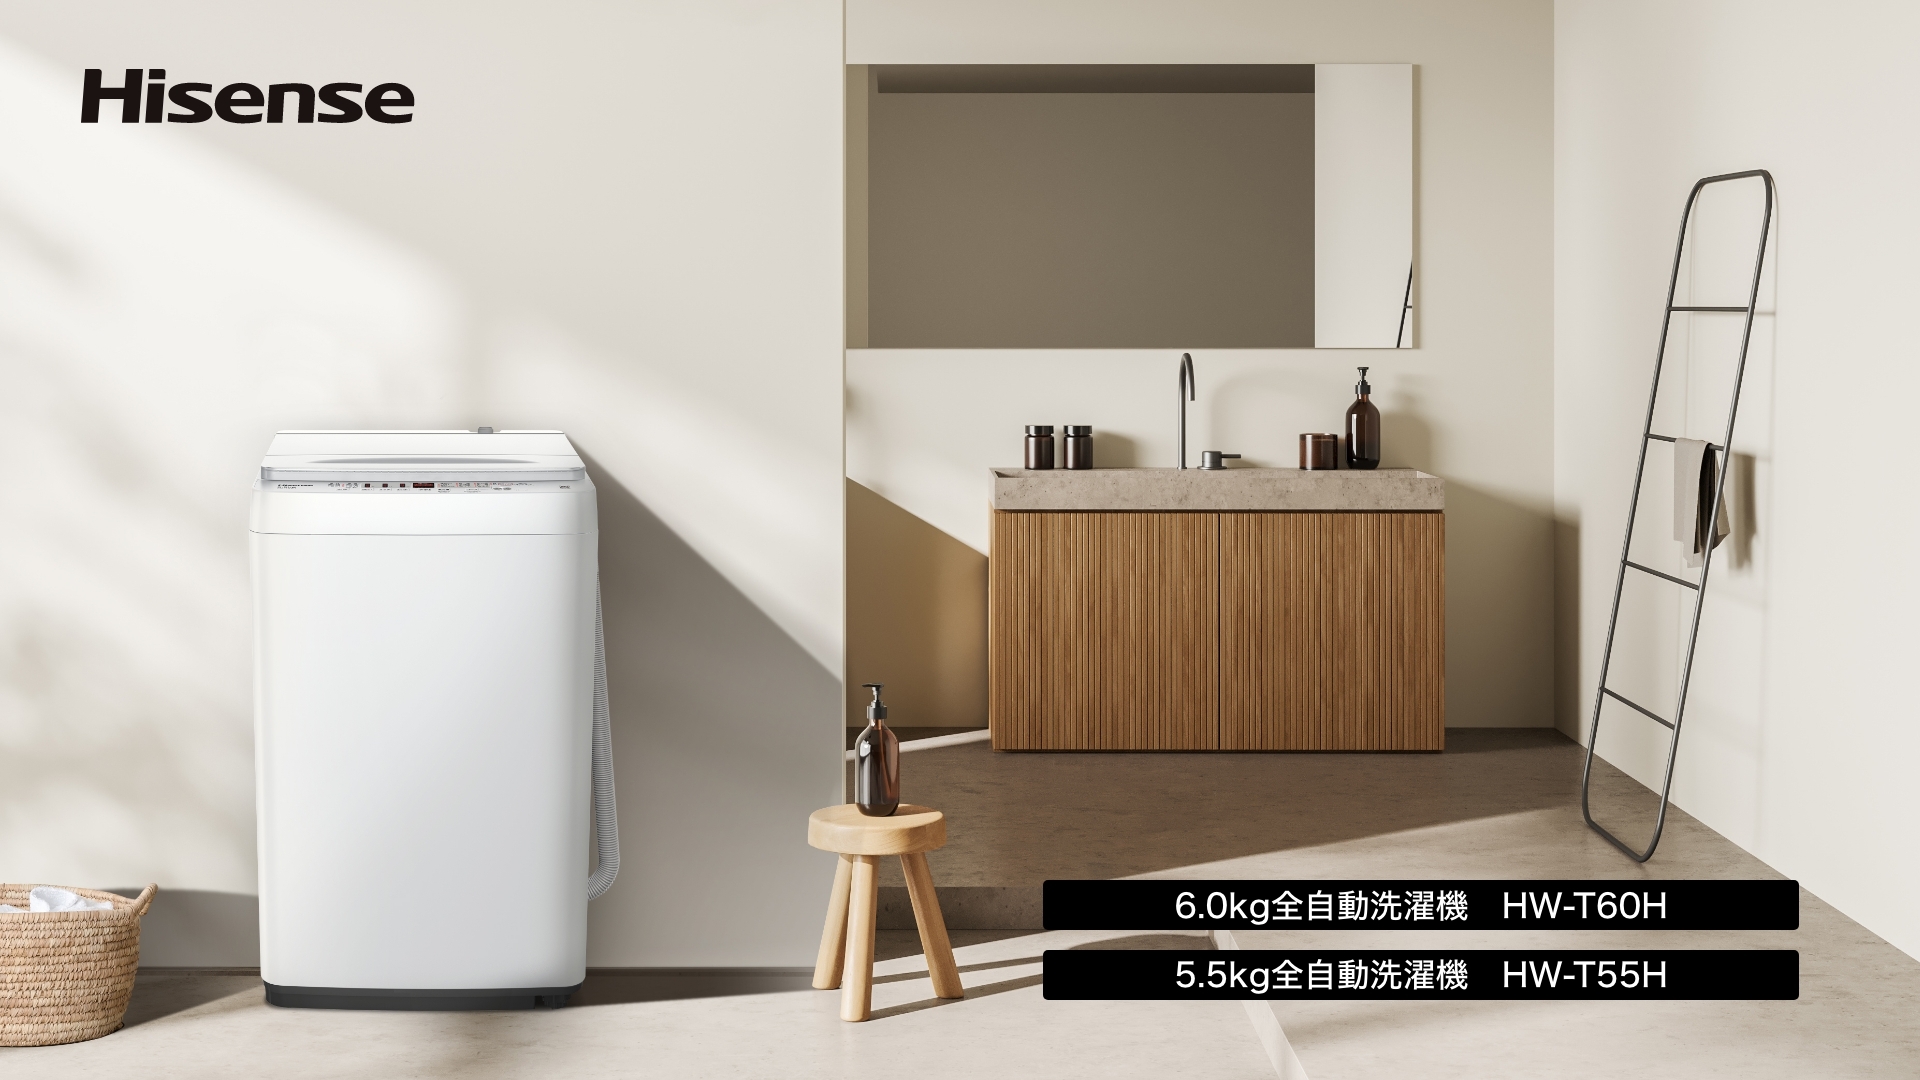 コンパクト設計の全自動洗濯機 2機種(6.0kg、5.5kg)がハイセンス ...